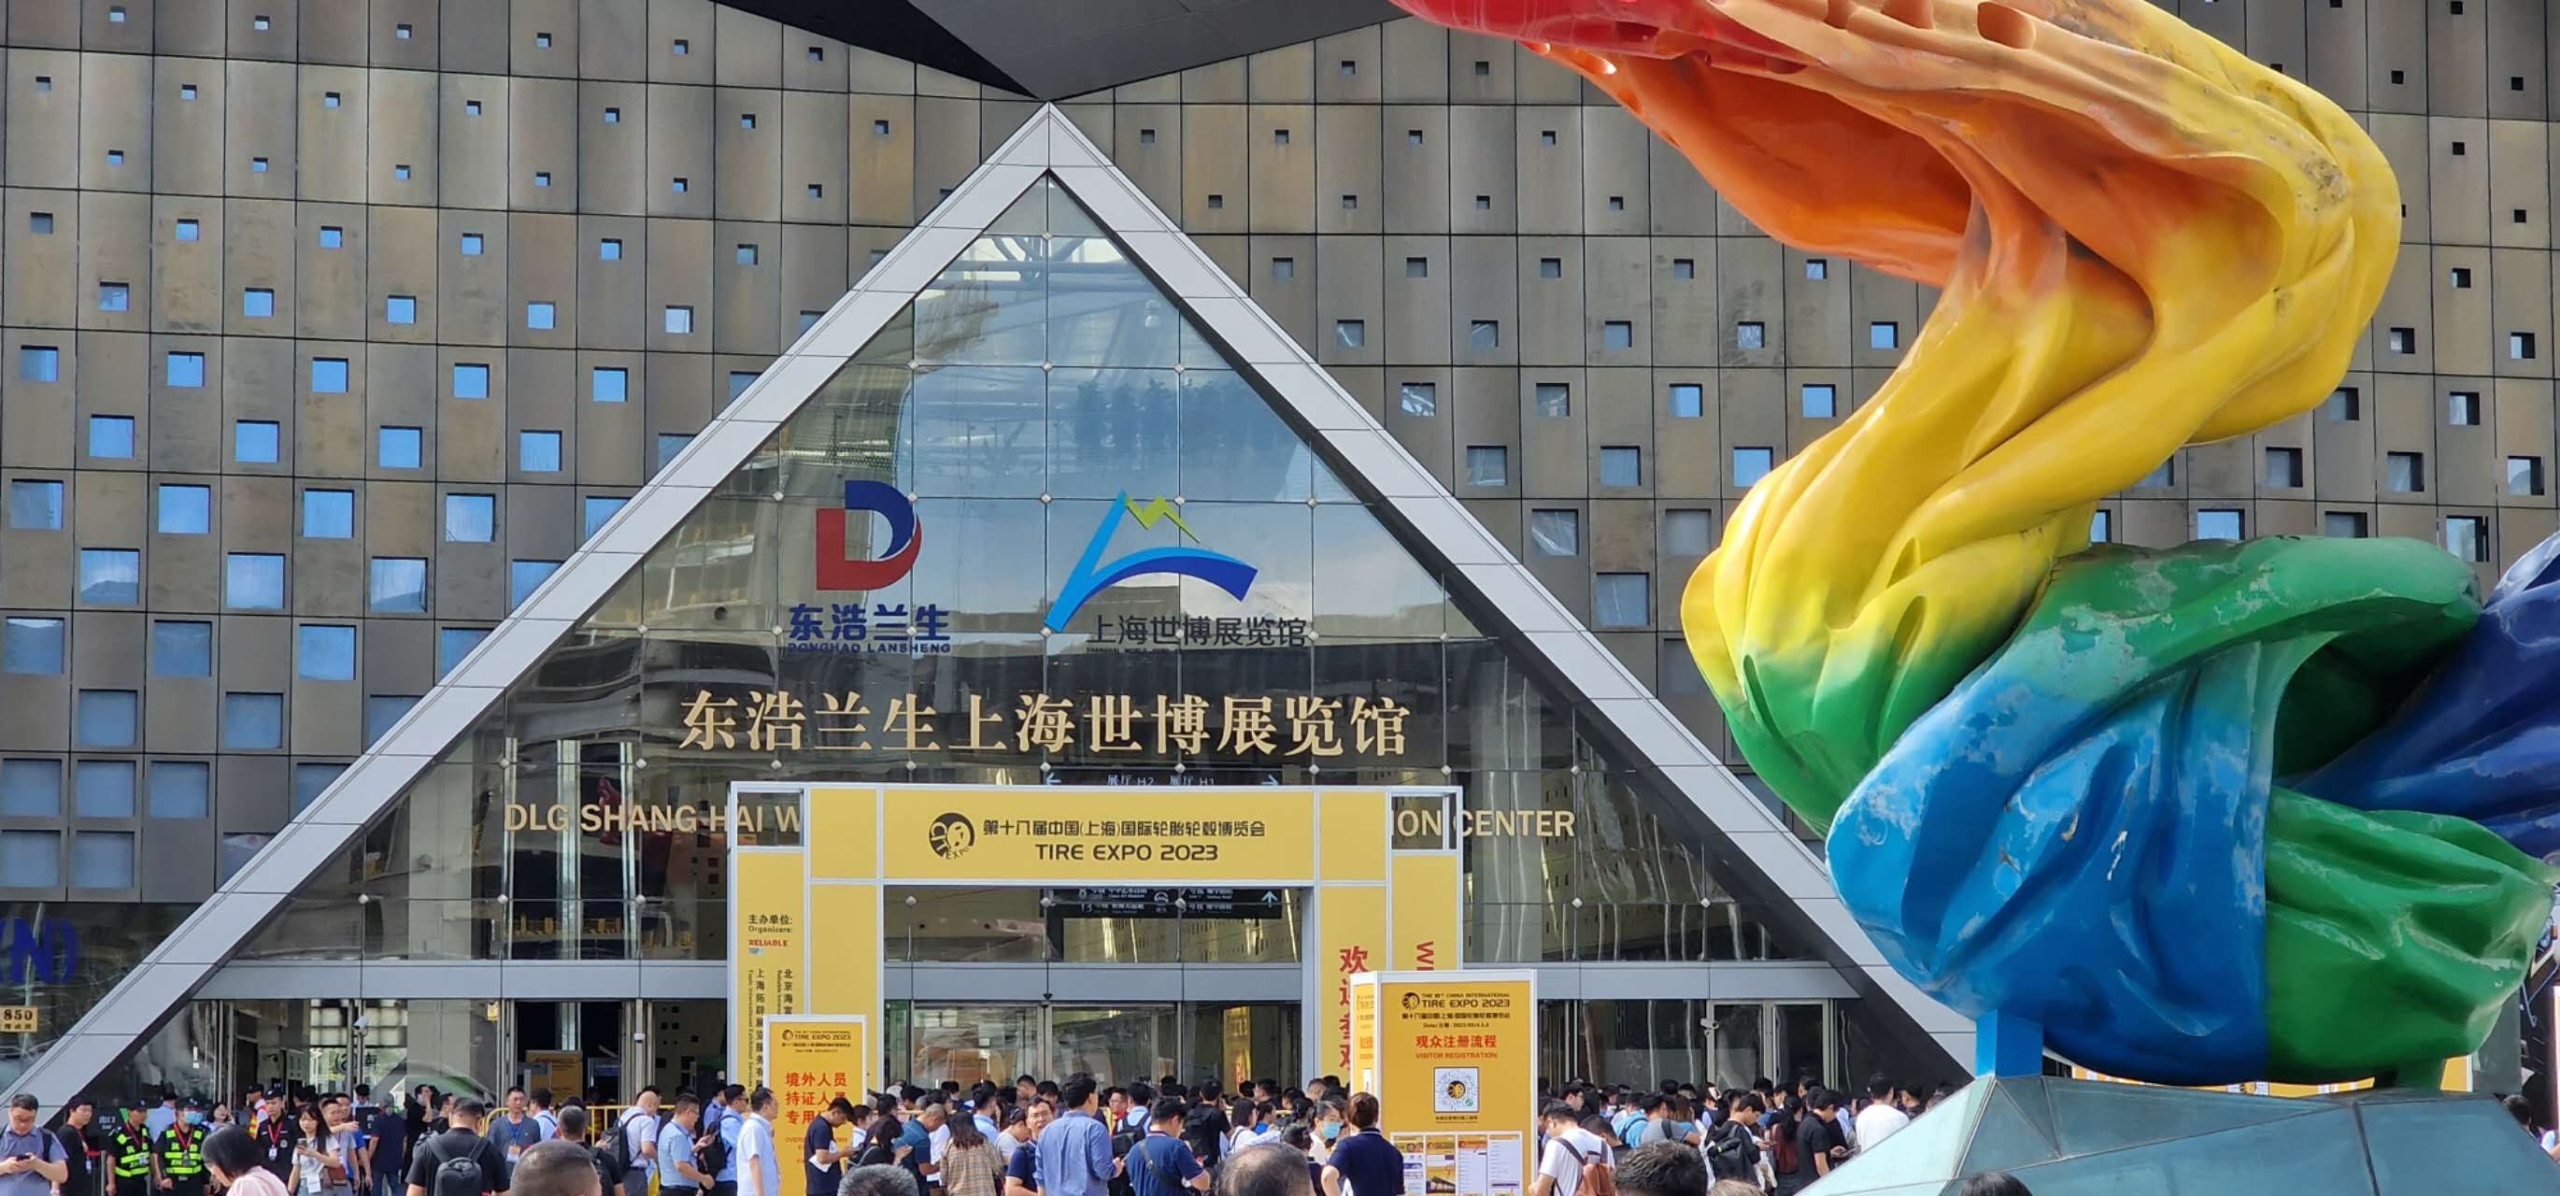 第十八届CITExpo在上海正式开幕